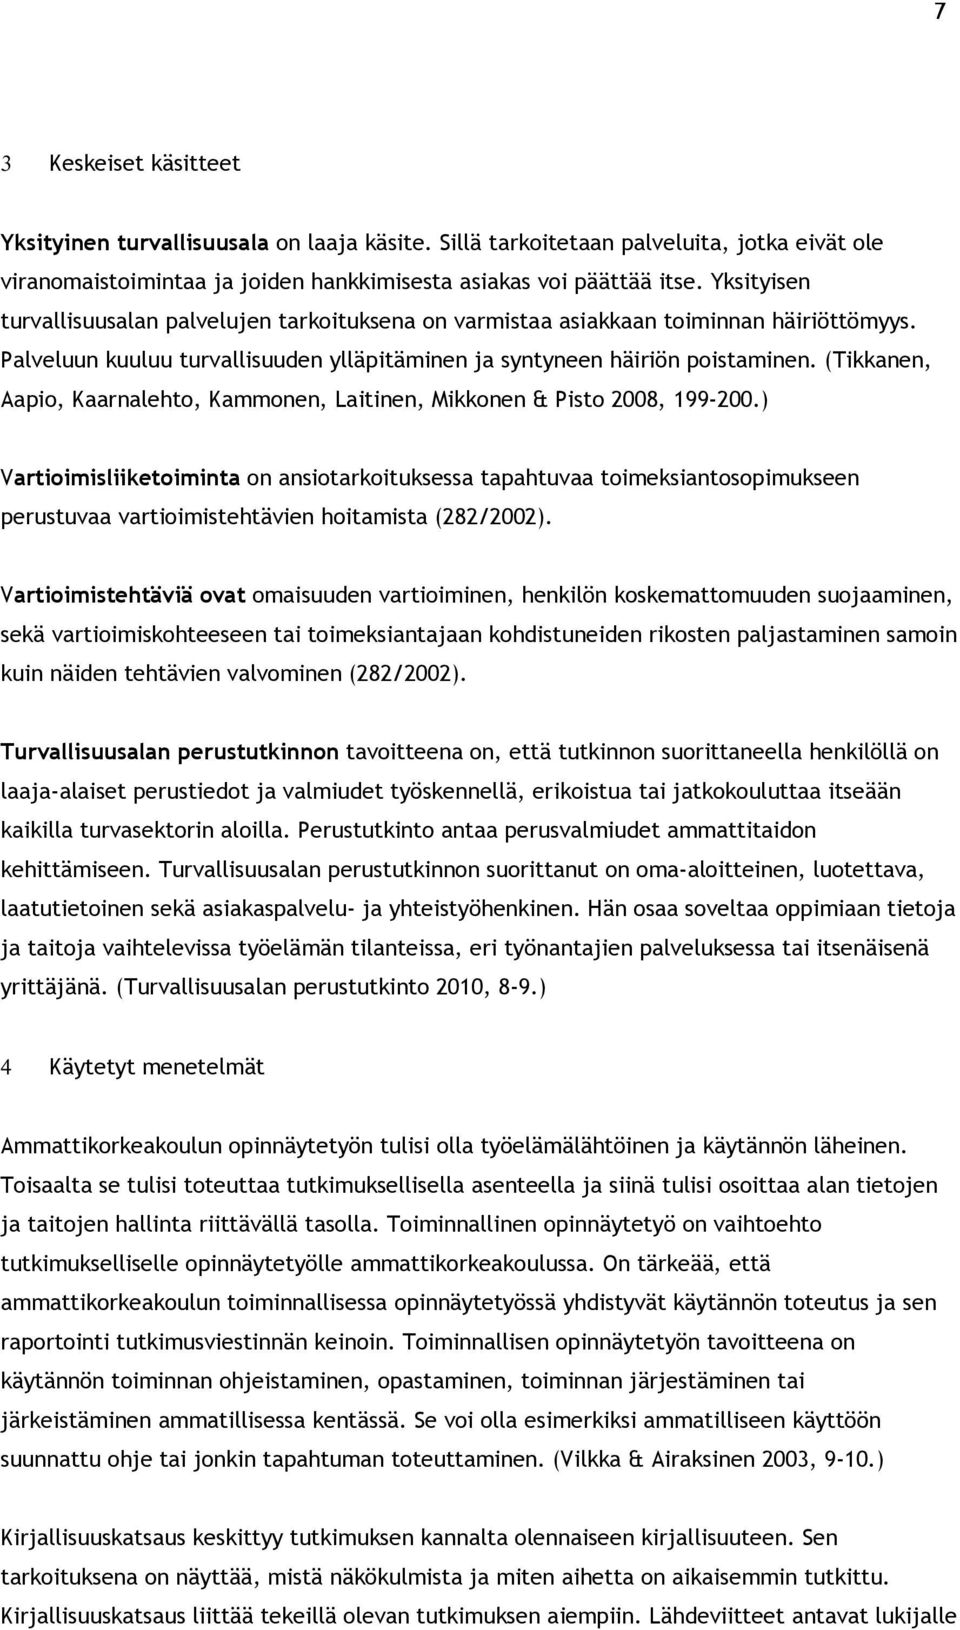 (Tikkanen, Aapio, Kaarnalehto, Kammonen, Laitinen, Mikkonen & Pisto 2008, 199-200.